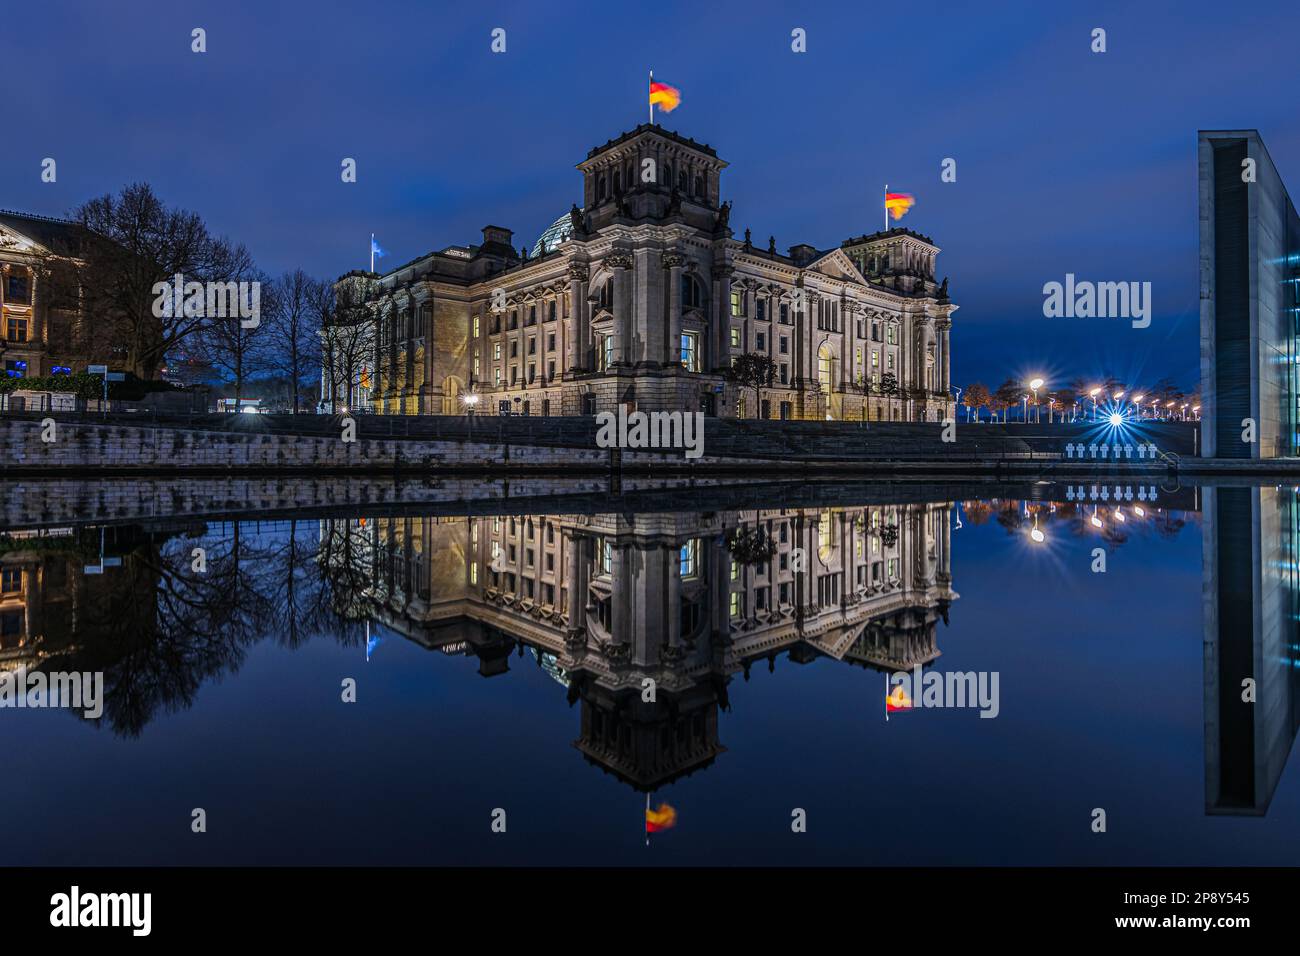 Blue Hour im Regierungsbezirk Berlin. Reichstag in der Hauptstadt Deutschlands. Spree im Stadtzentrum mit Reflexion aus dem Gebäude Stockfoto